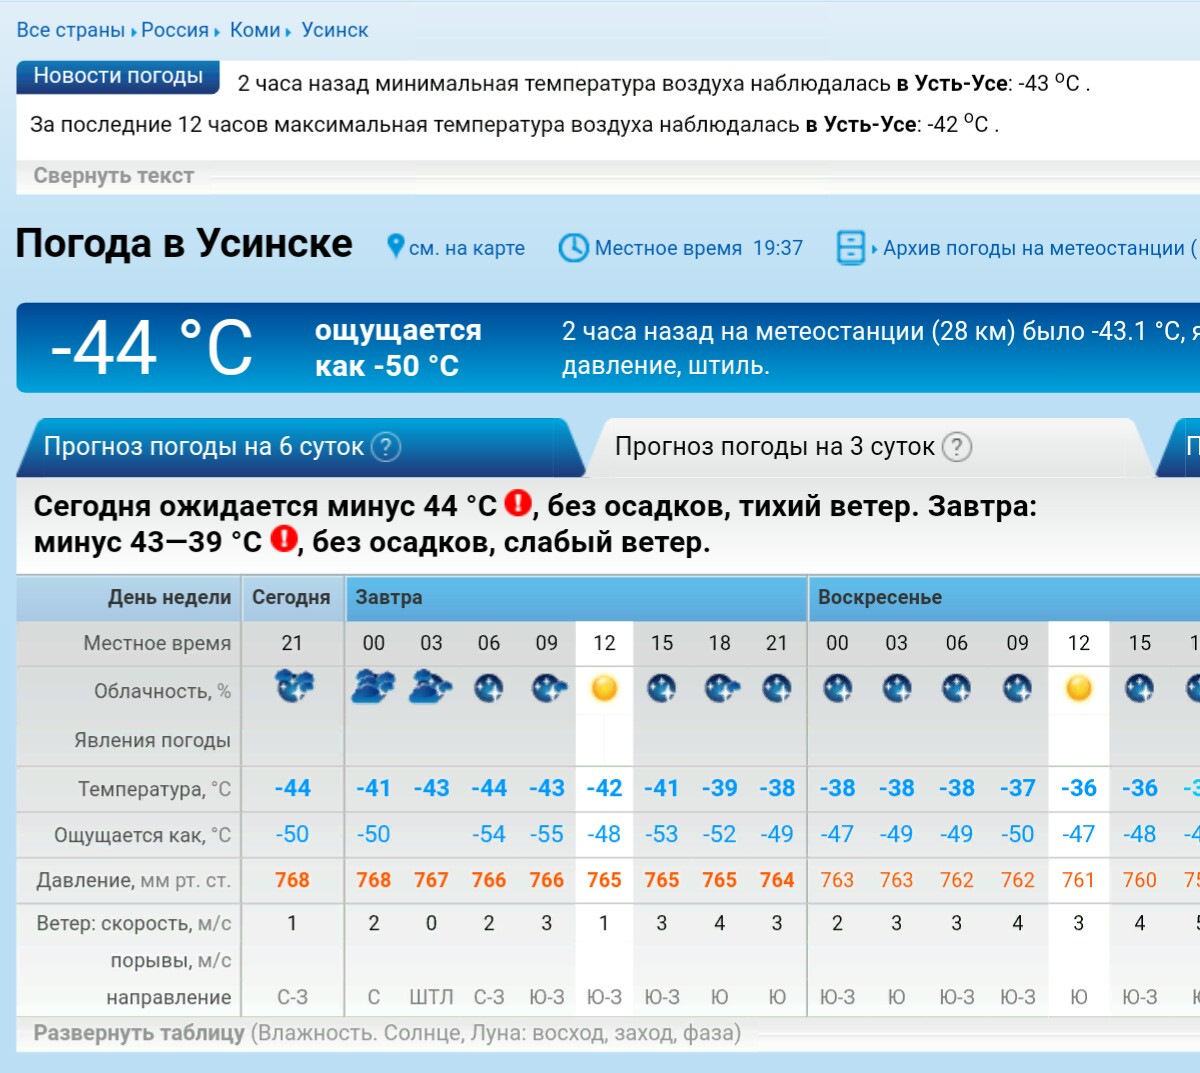 Гисметео павловск на 10 дней. Завтра погода на завтра. Погода Усинск сейчас. Погода в Усинске на завтра. Какая температура будет завтра.